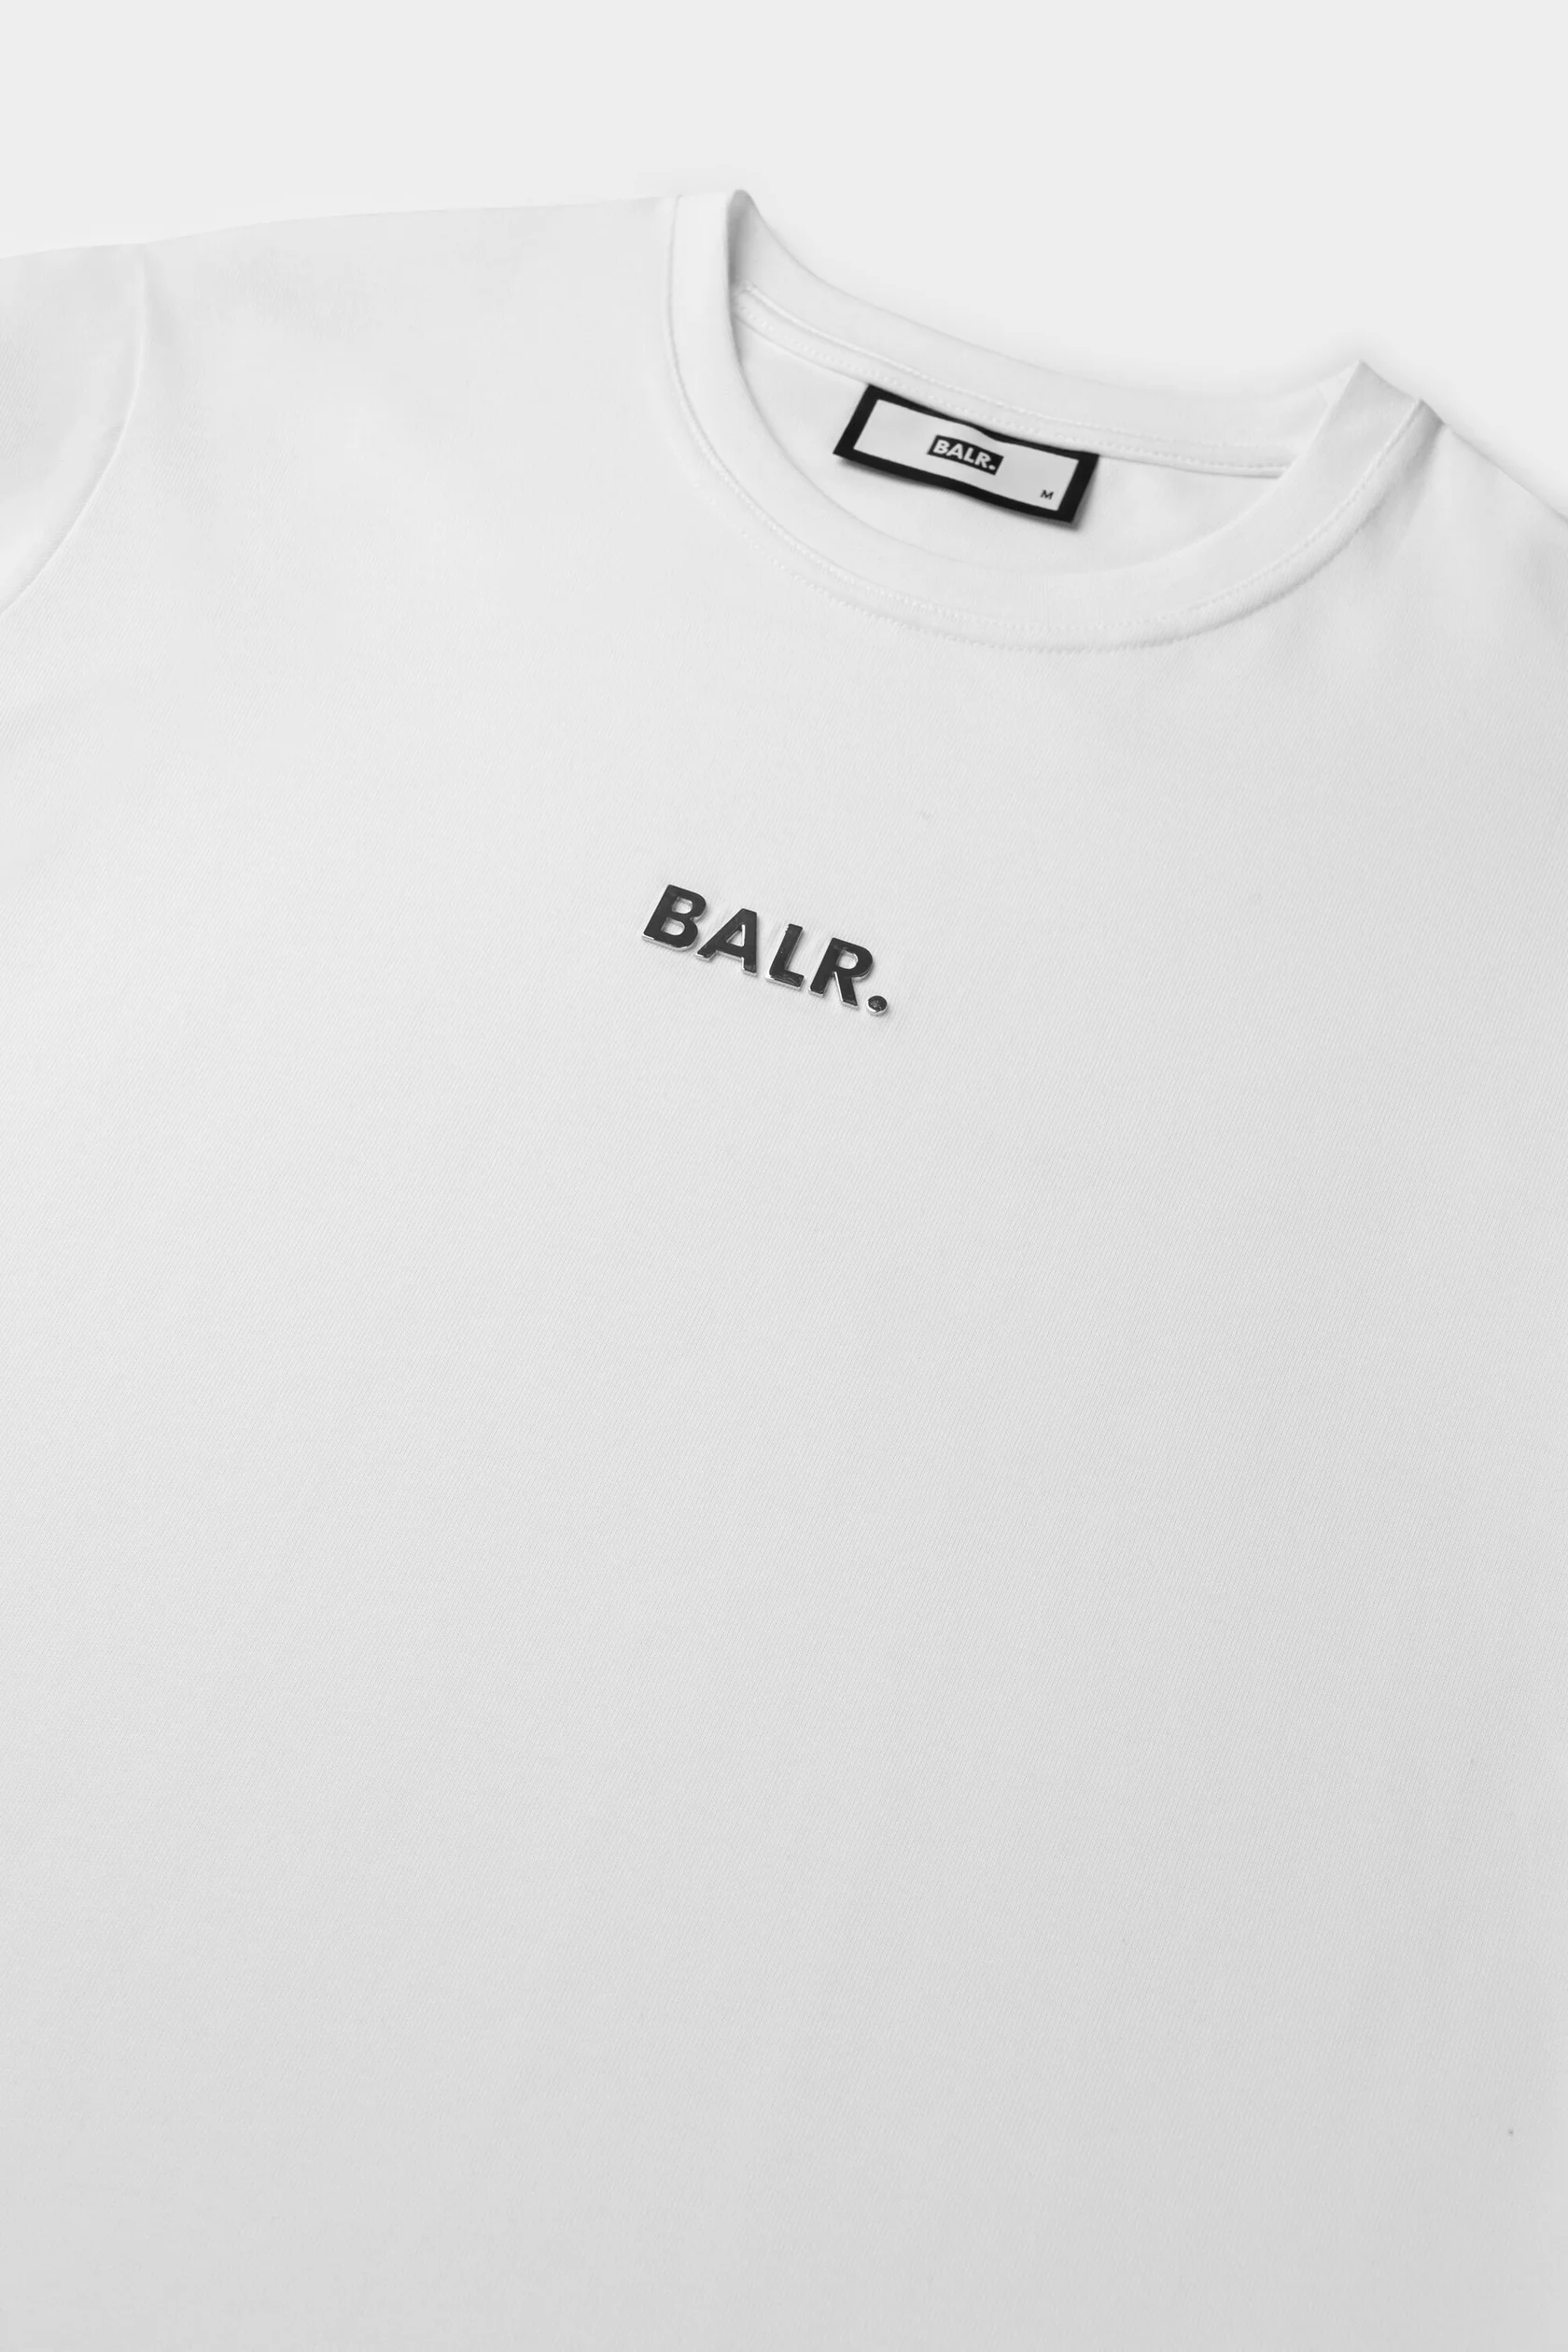 【現行品】BALR. BL Classic Straight T-Shirt